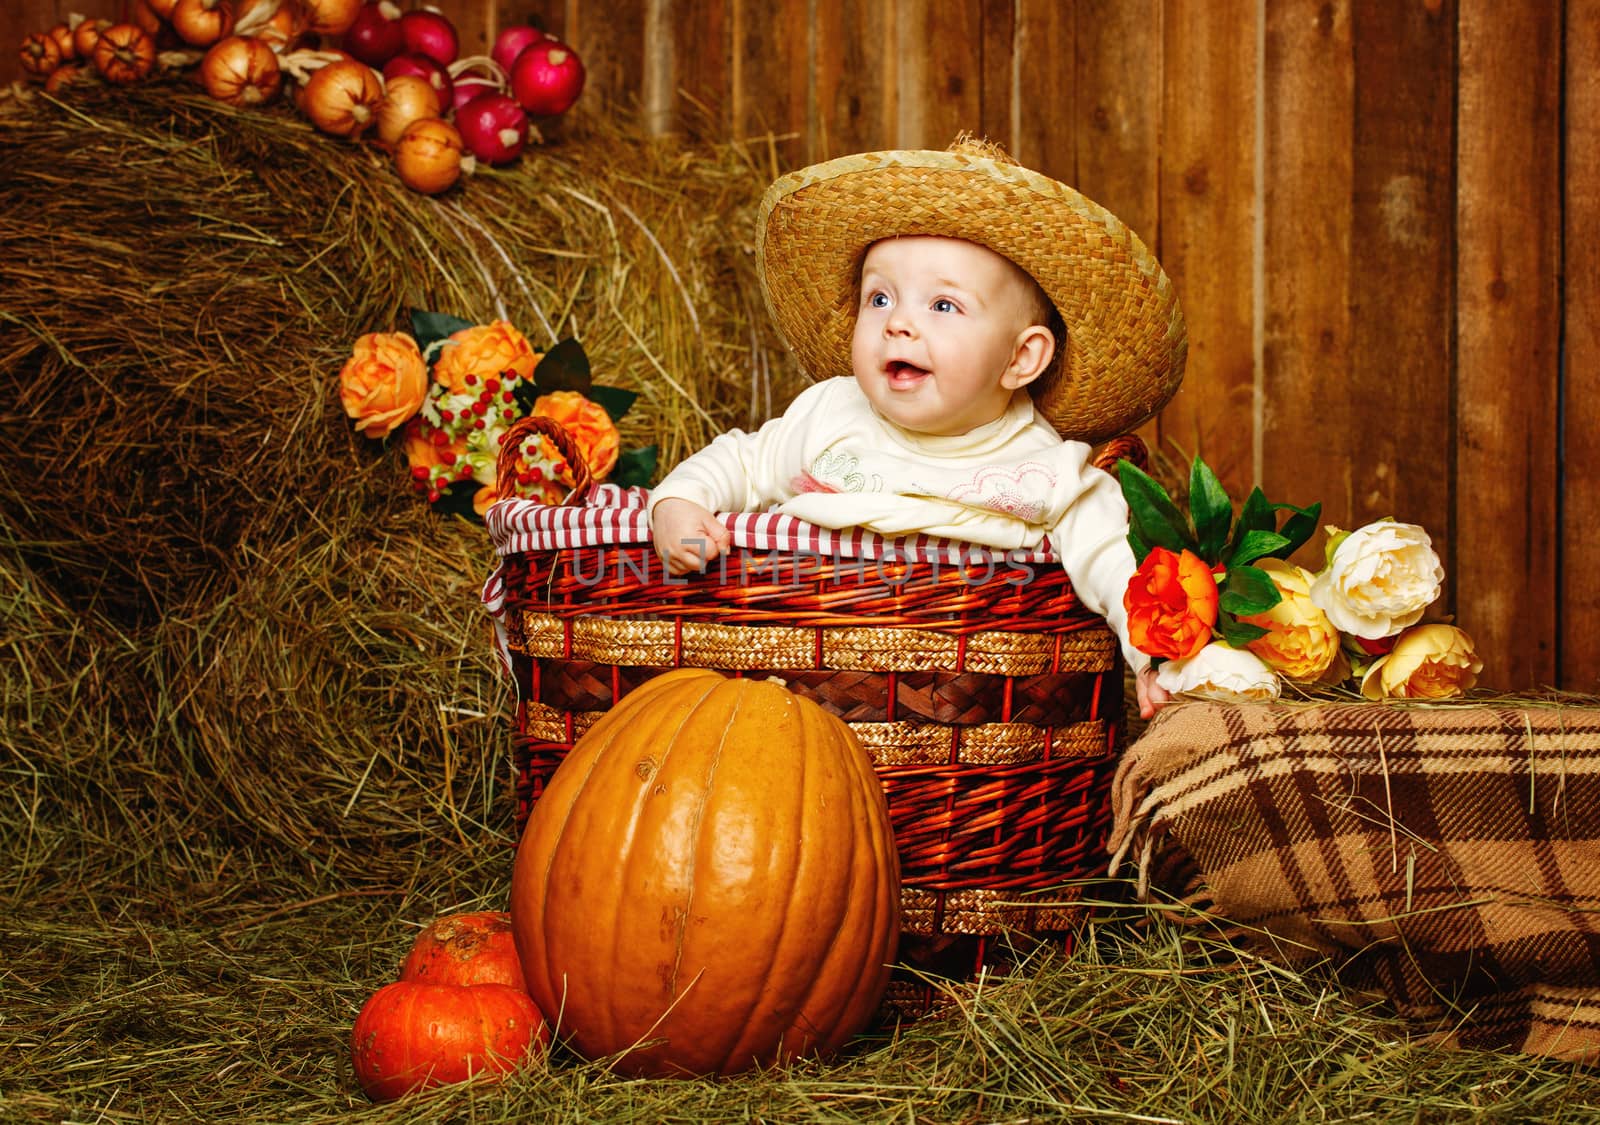 Little girl in straw hat sitting in a wicker basket near pumpkins